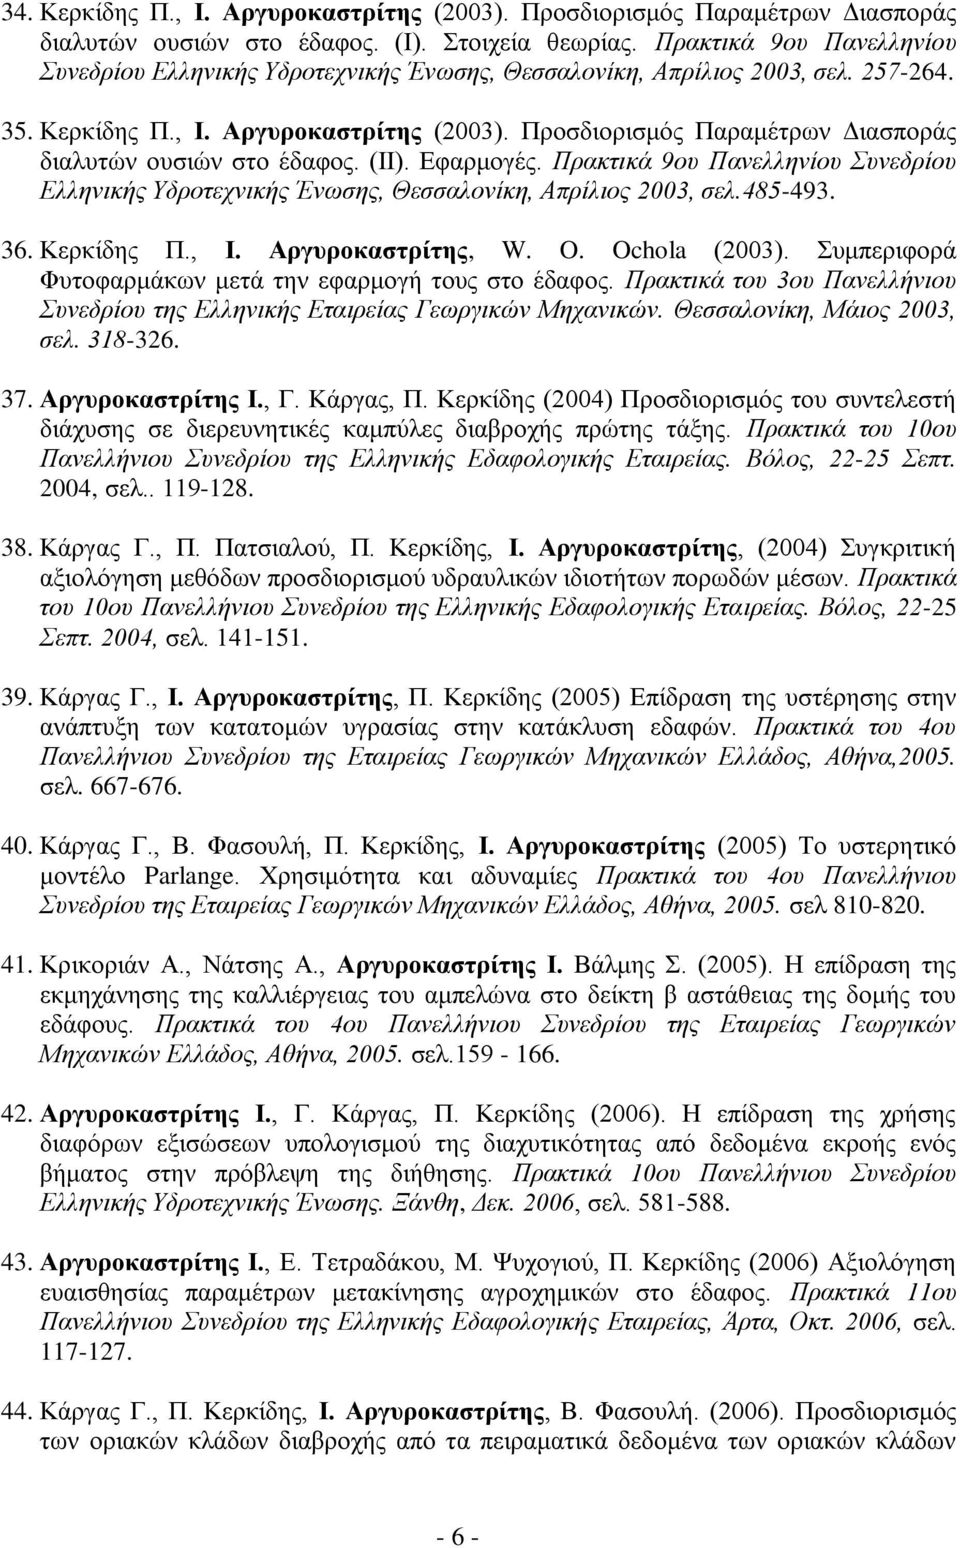 Προσδιορισμός Παραμέτρων Διασποράς διαλυτών ουσιών στο έδαφος. (ΙΙ). Εφαρμογές. Πρακτικά 9ου Πανελληνίου Συνεδρίου Ελληνικής Υδροτεχνικής Ένωσης, Θεσσαλονίκη, Απρίλιος 2003, σελ.485-493. 36.